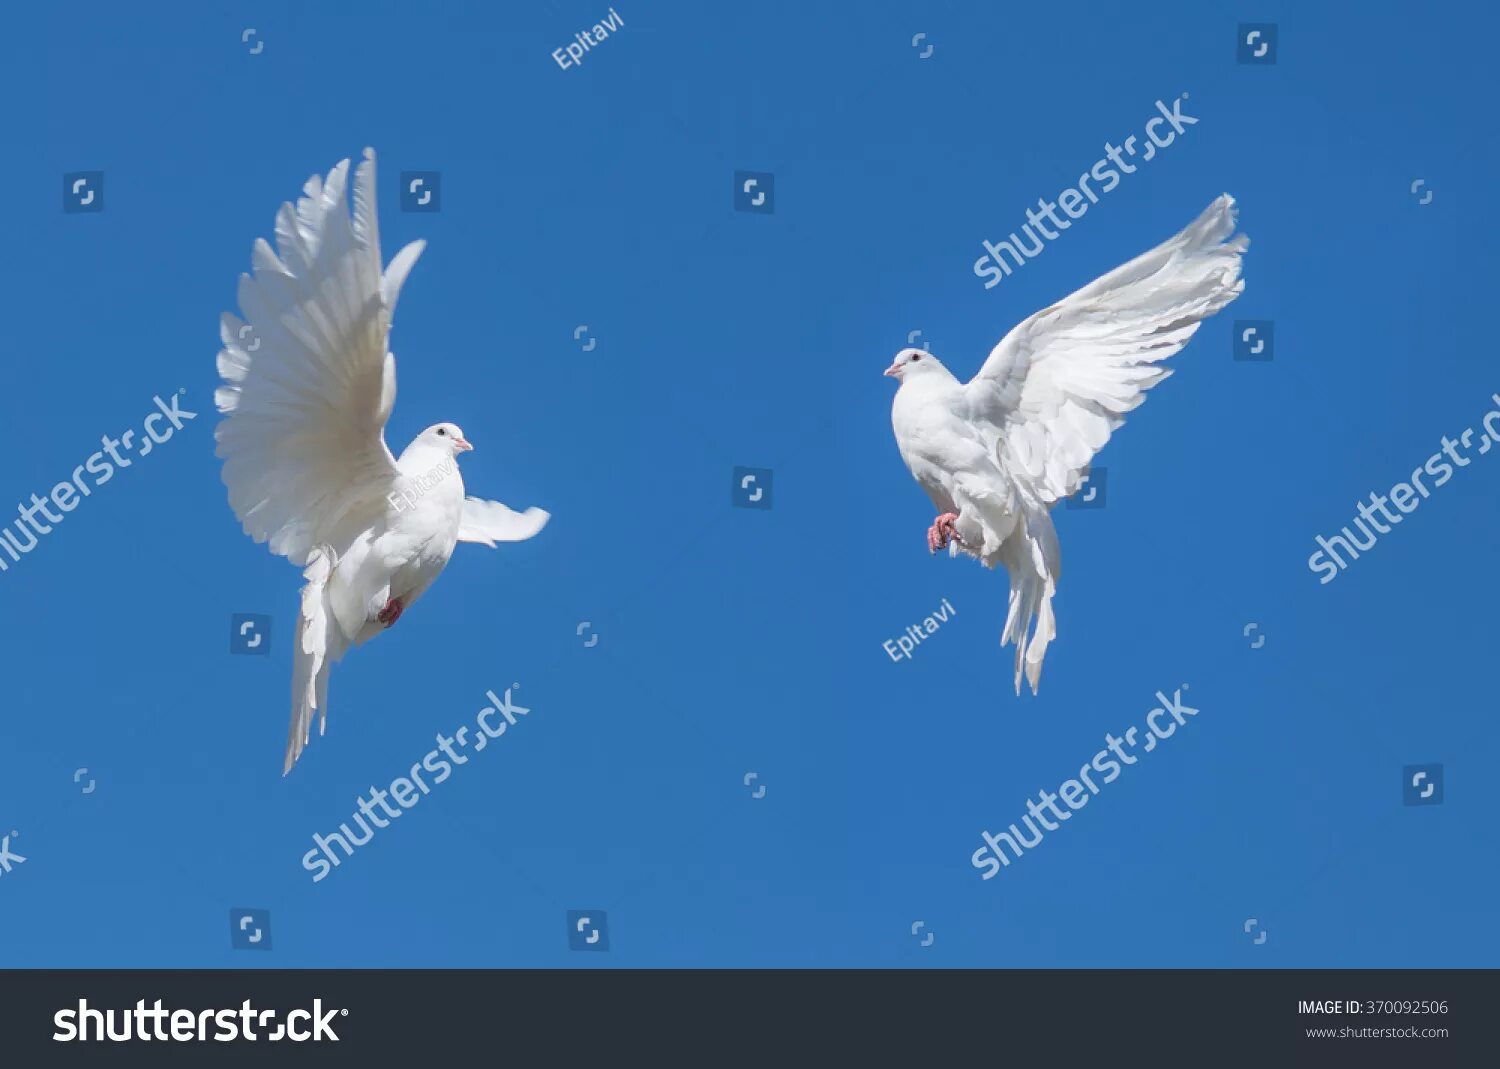 Прилетел на два дня. Голубь в полёте. Белый голубь в полете. Два голубя в полете. Белые голуби в небе.